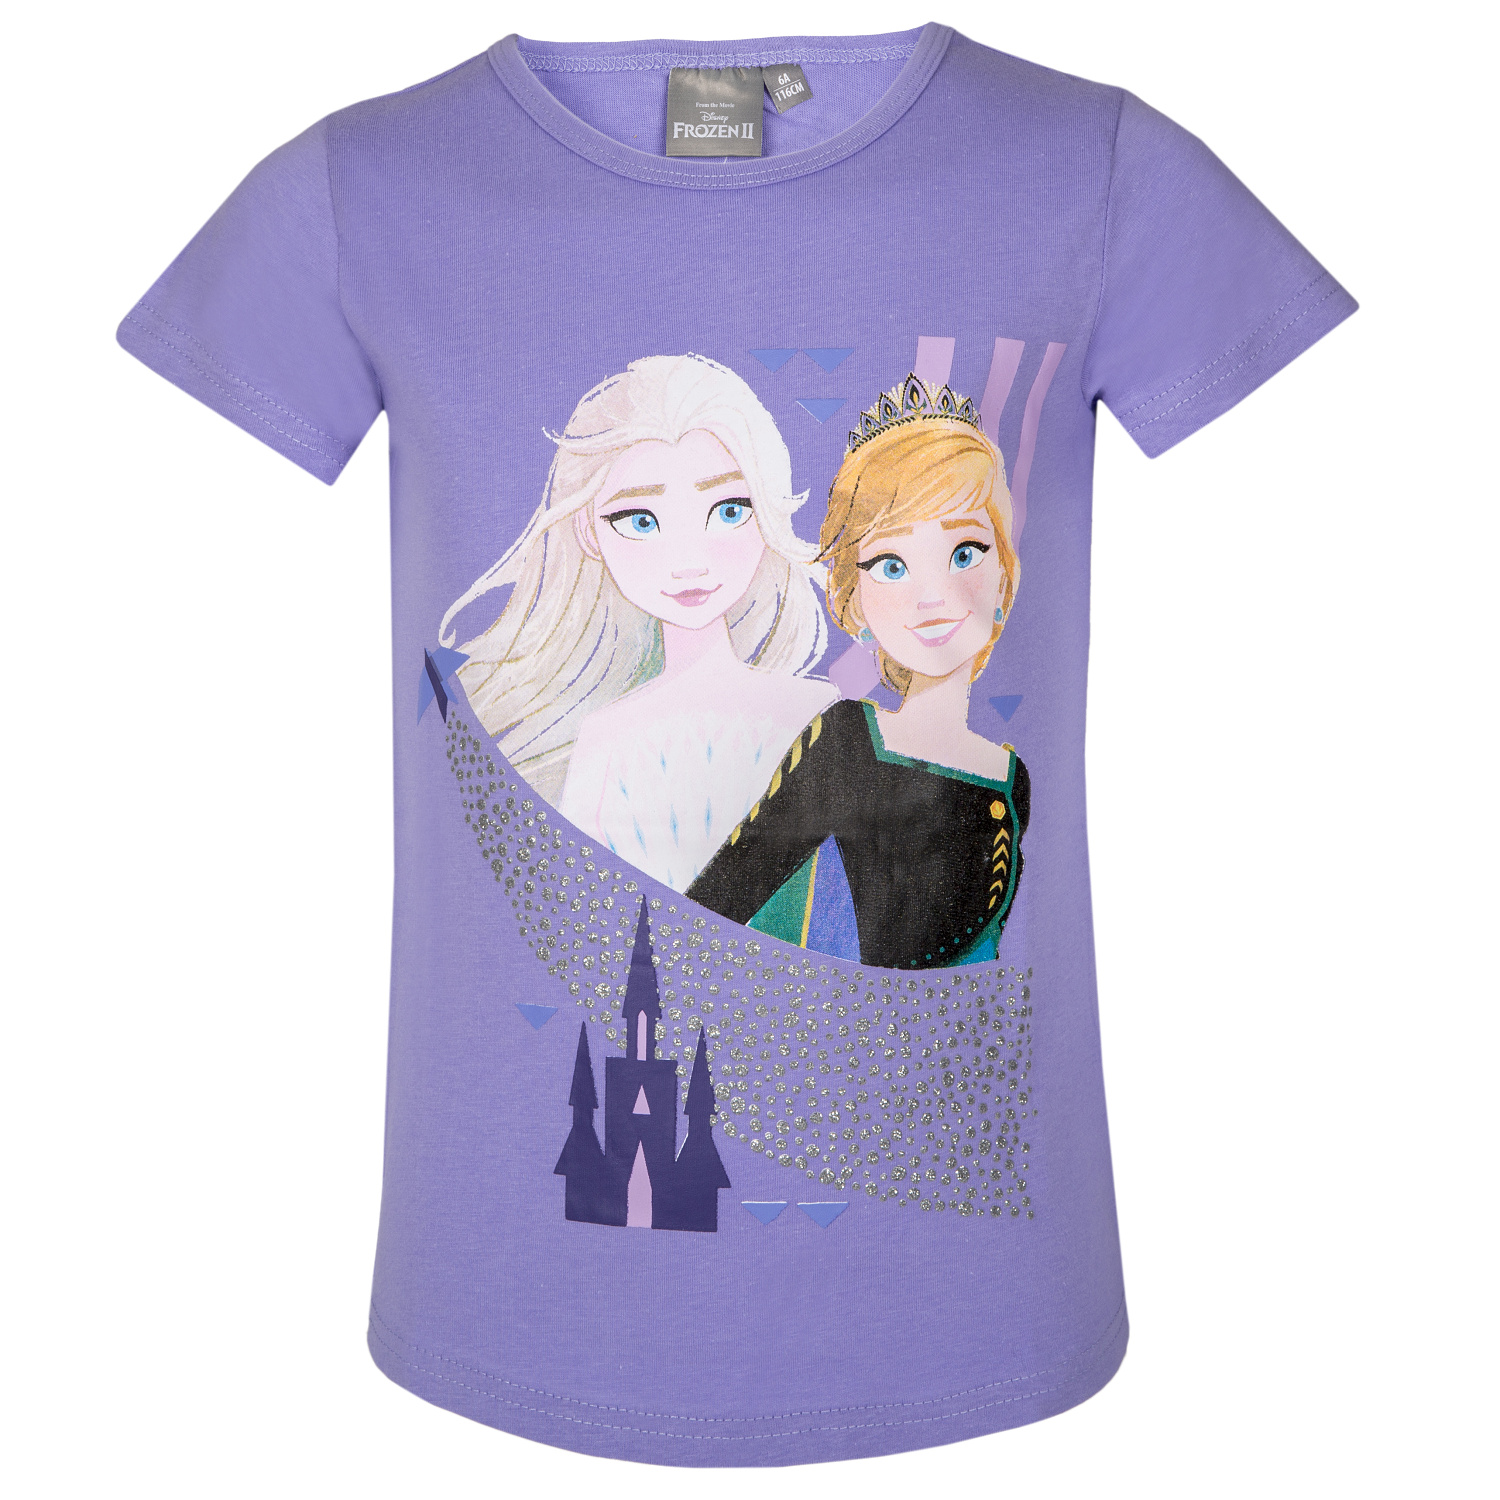 Frozen - licence Dívčí tričko - Frozen 205, fialková Barva: Fialková, Velikost: 98